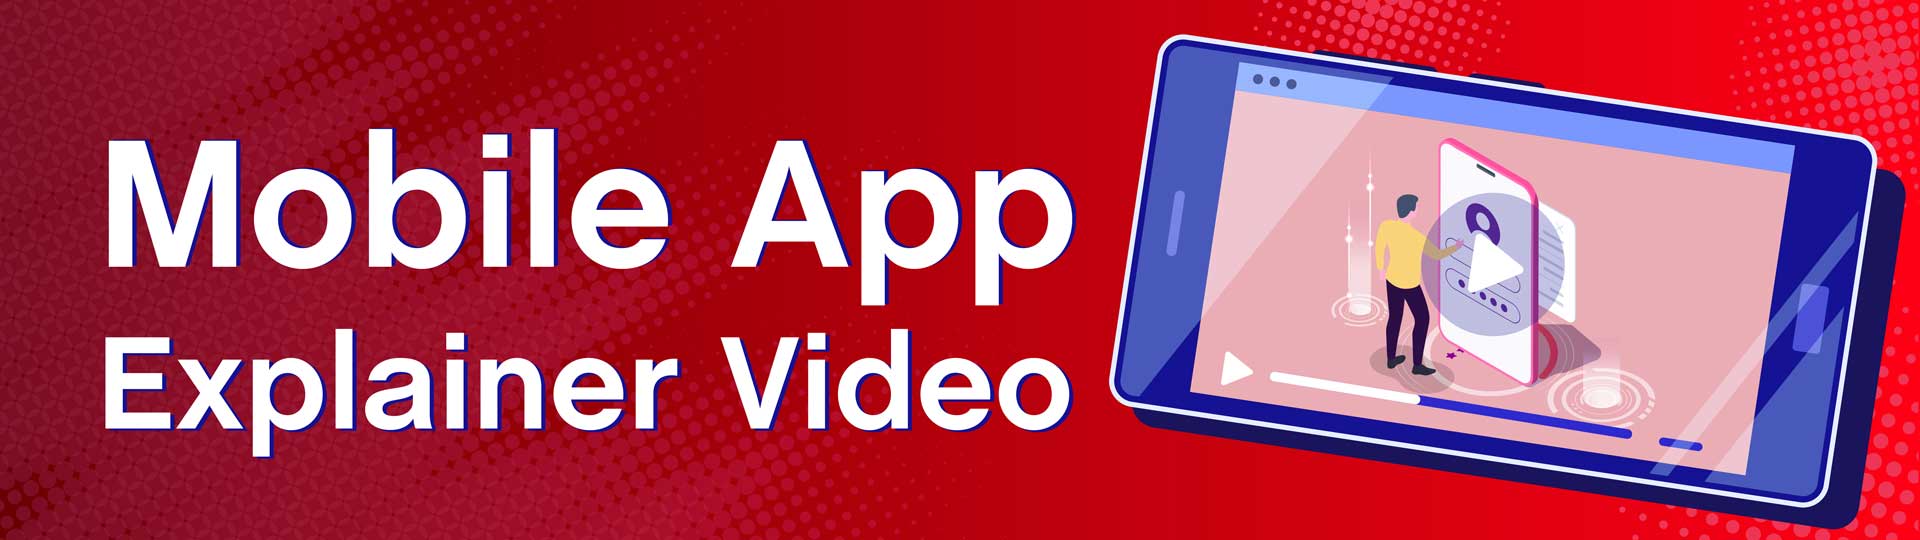 Mobile-app-explainer-video